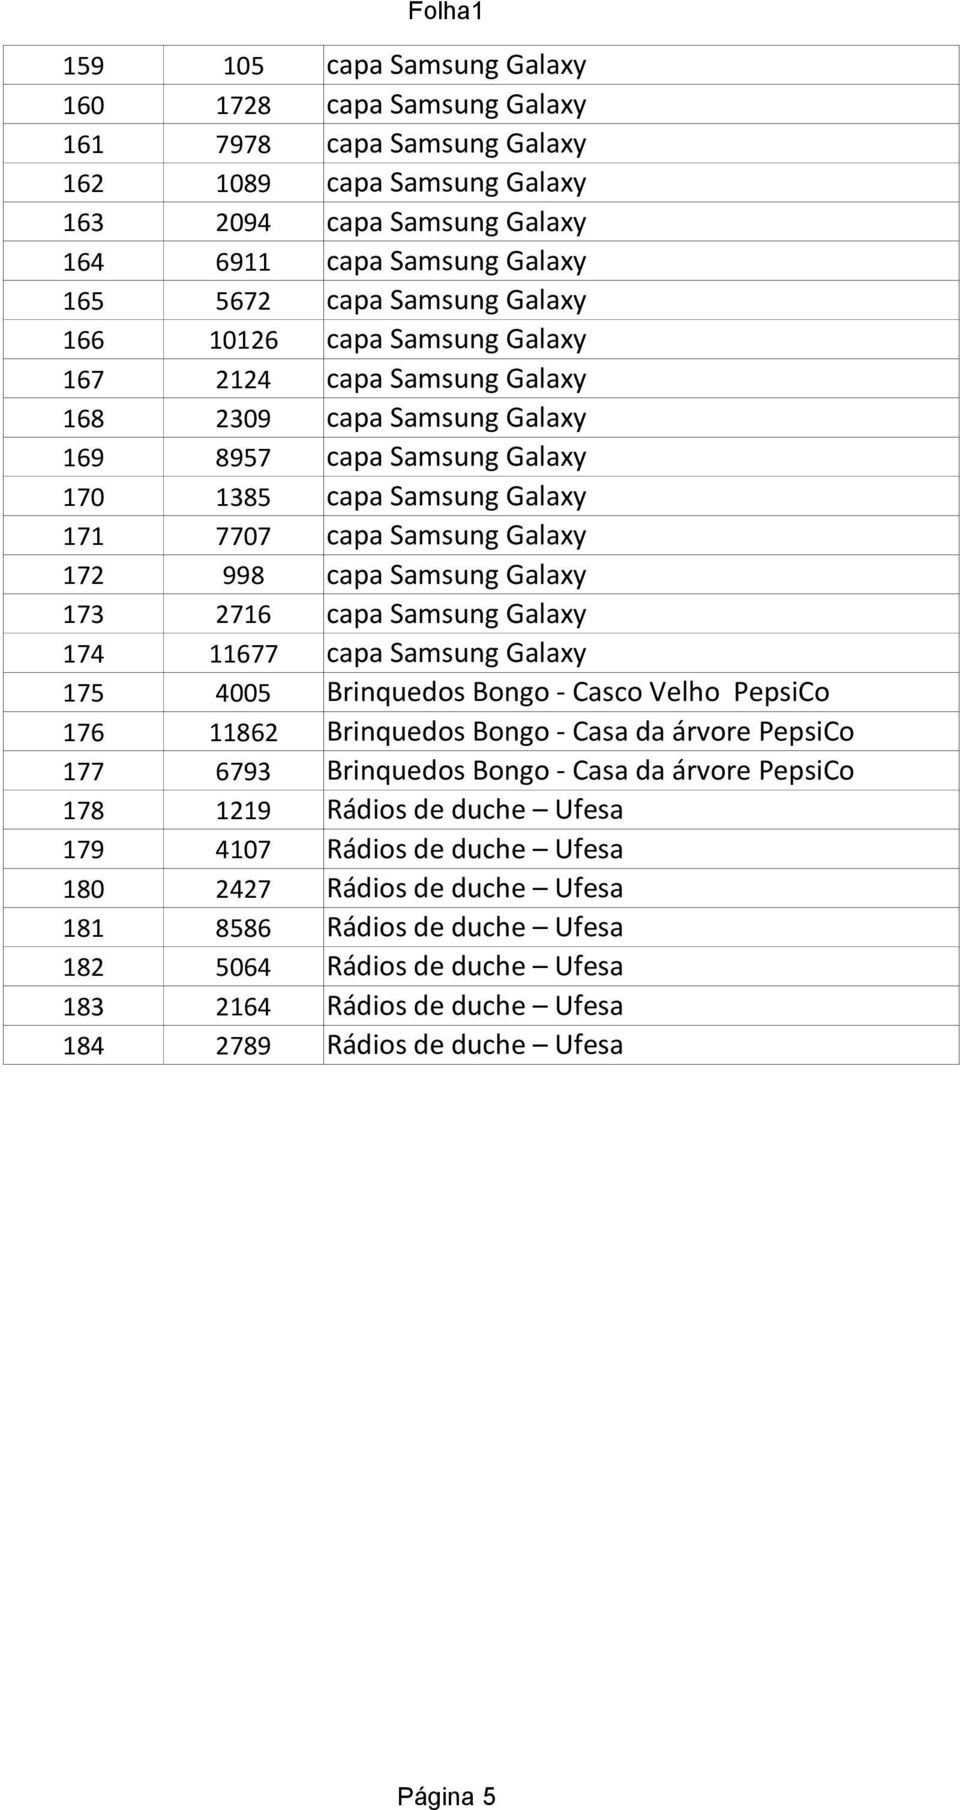 Samsung Galaxy 173 2716 capa Samsung Galaxy 174 11677 capa Samsung Galaxy 175 4005 Brinquedos Bongo - Casco Velho PepsiCo 176 11862 Brinquedos Bongo - Casa da árvore PepsiCo 177 6793 Brinquedos Bongo